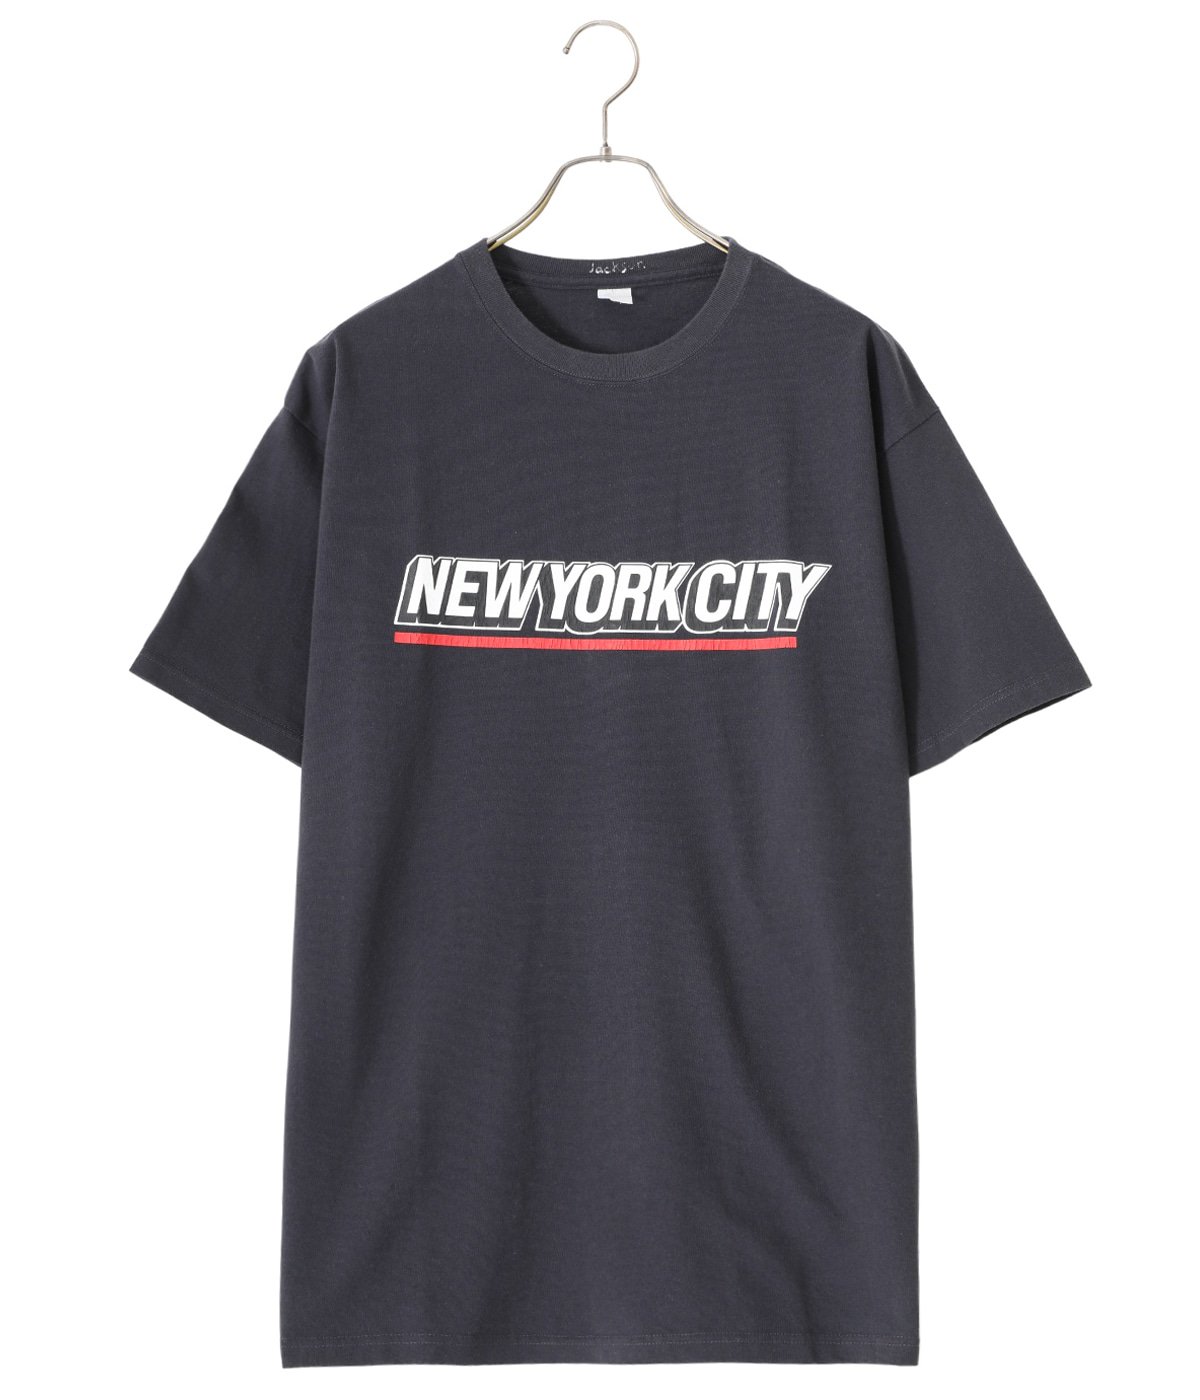 ジャクソンマティスJACKSON MATISSE 2019SS NEW YORK Tシャツ新品【MTSA67729】